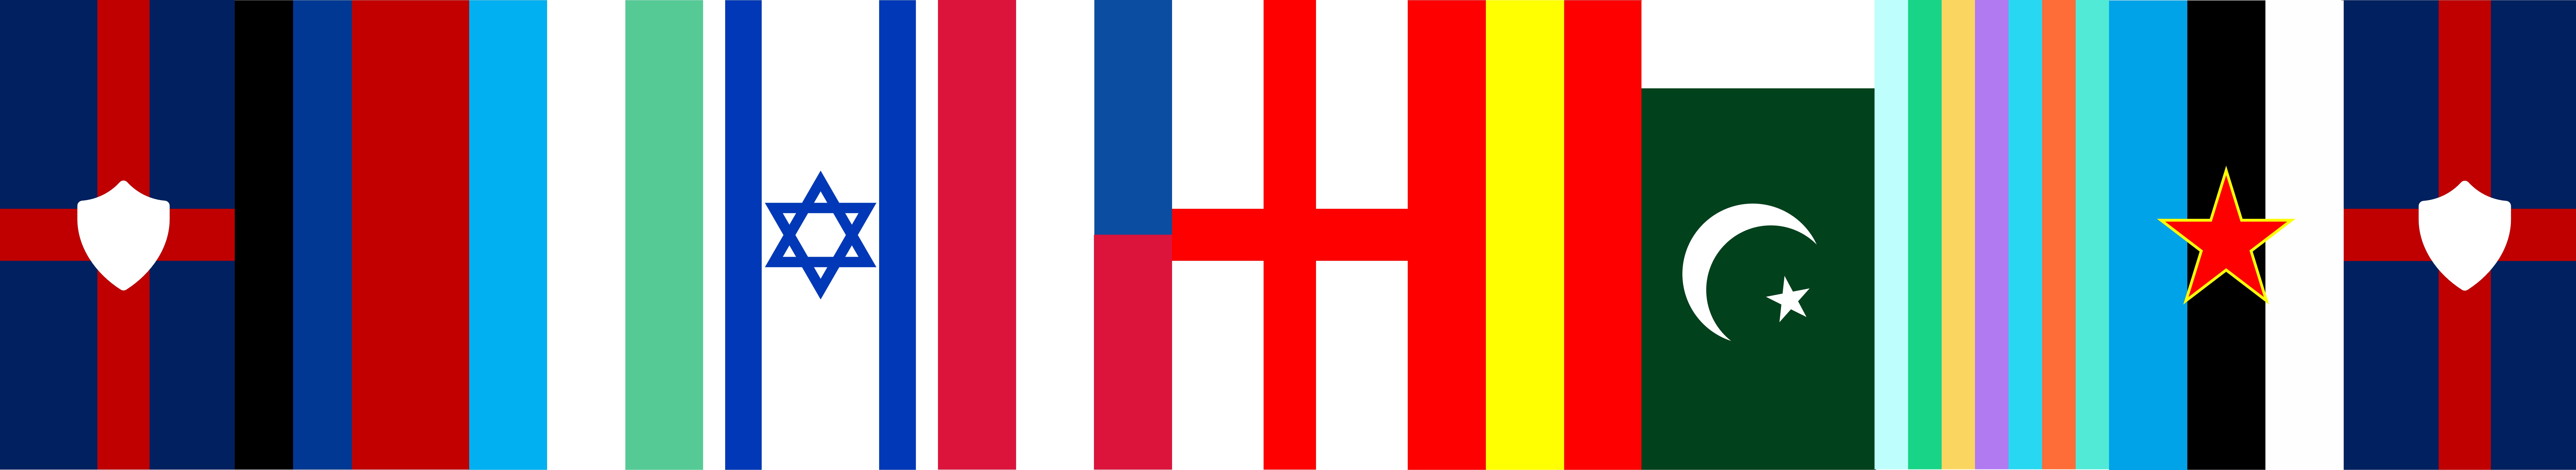 哈瓦那公约组织成员国竖旗